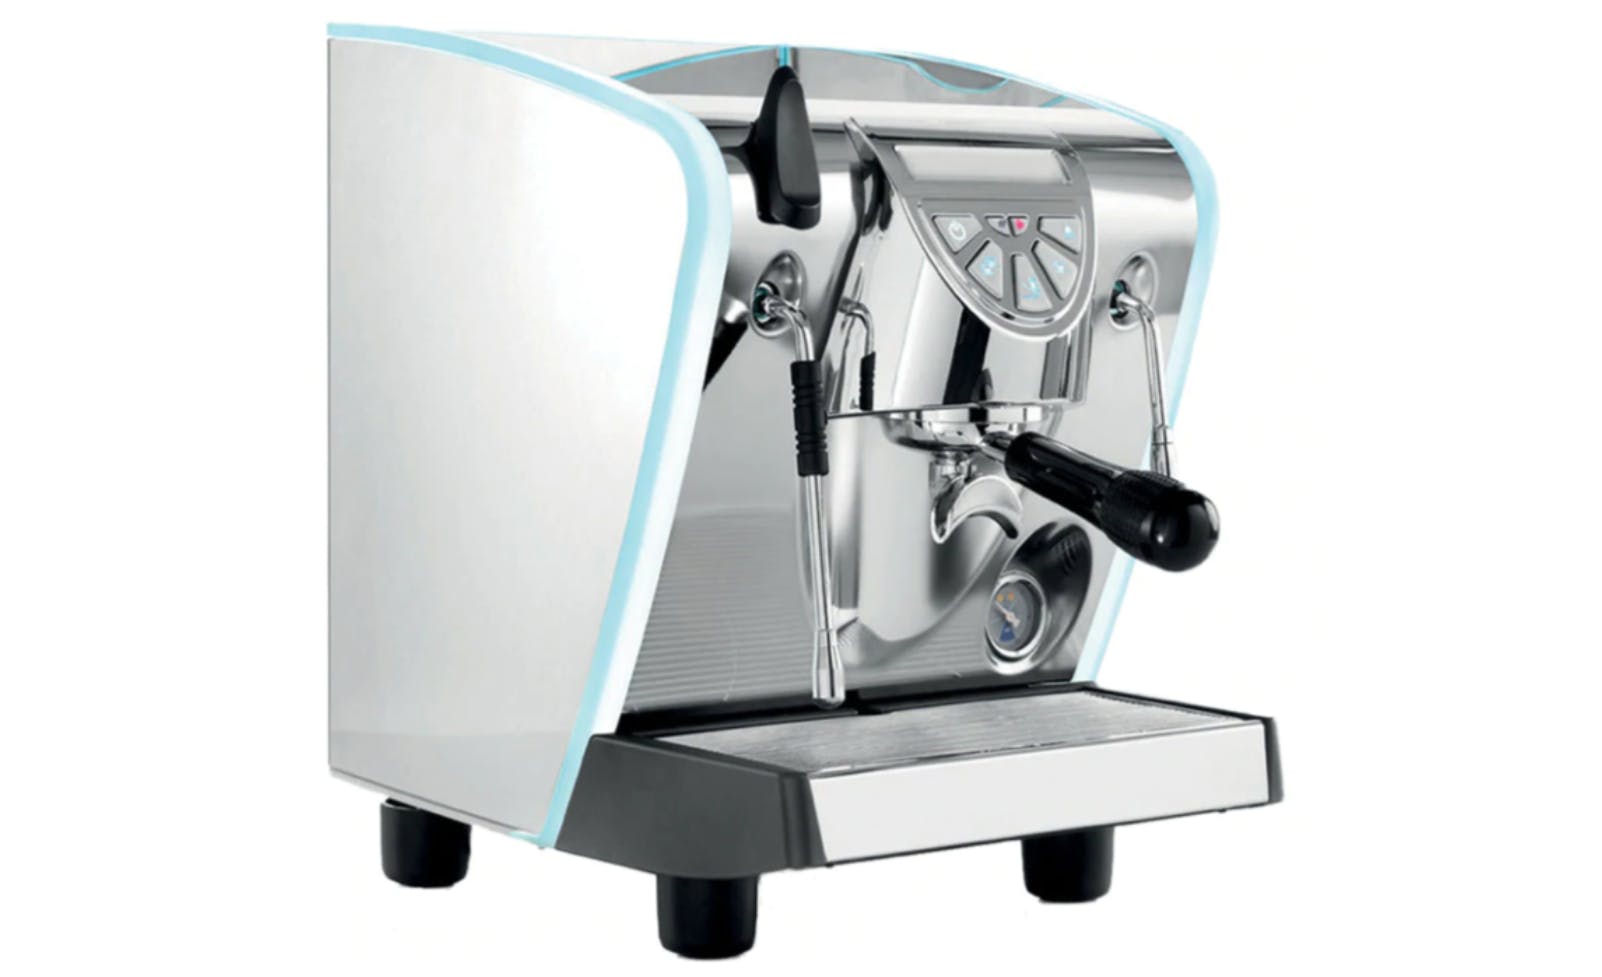 The Musica Espresso machine by Simonelli.